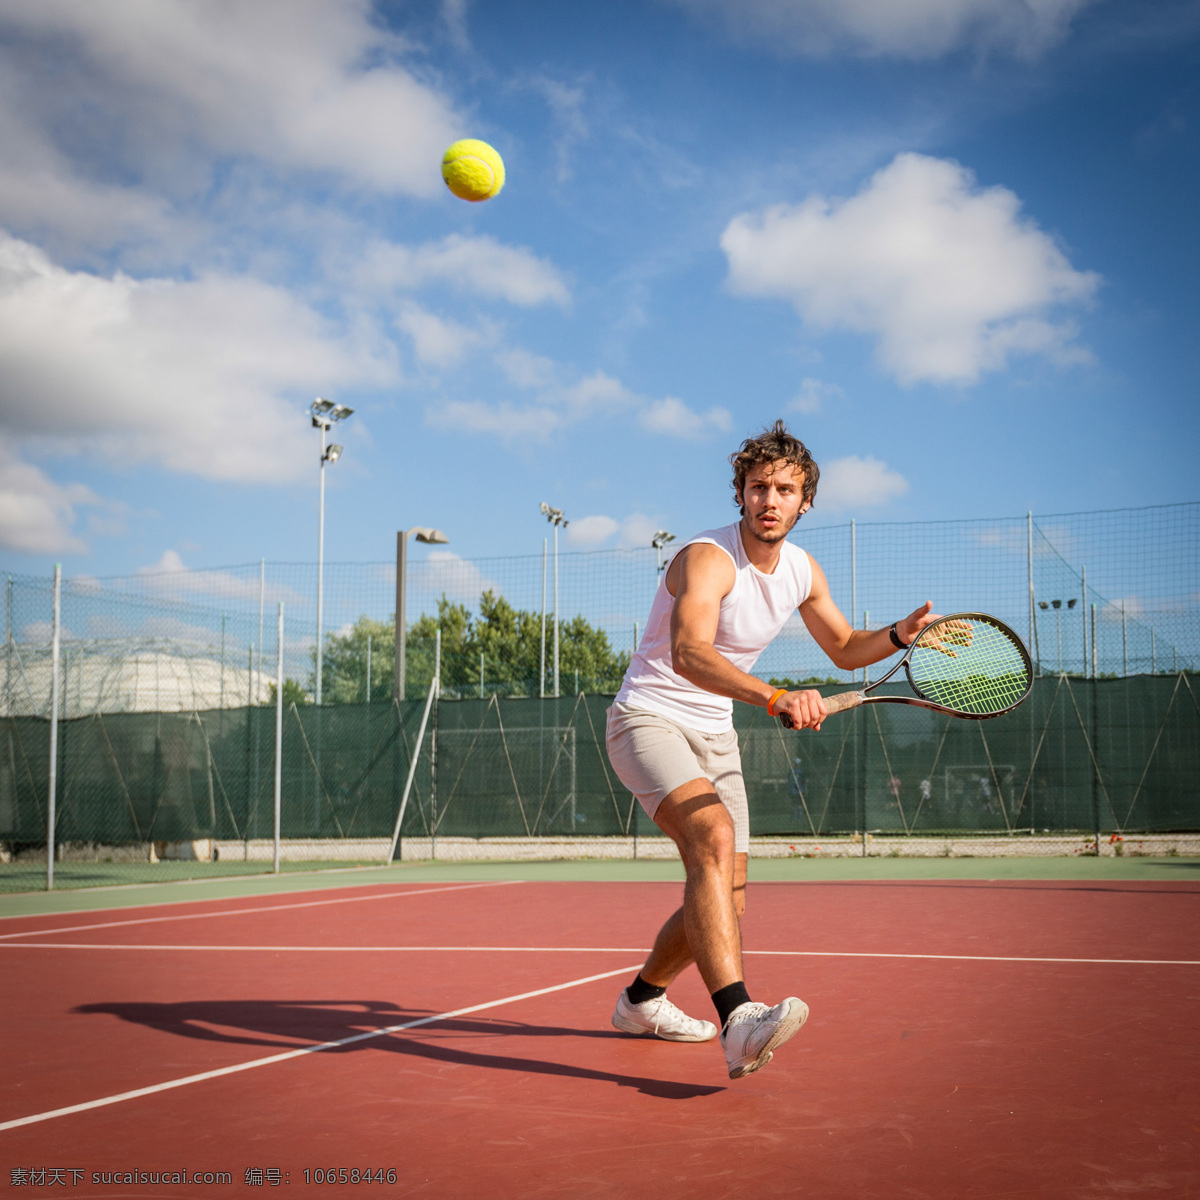 网球广告 网球素材 体育 运动 健身 打球 时尚男人 男性 体育运动 生活百科 灰色